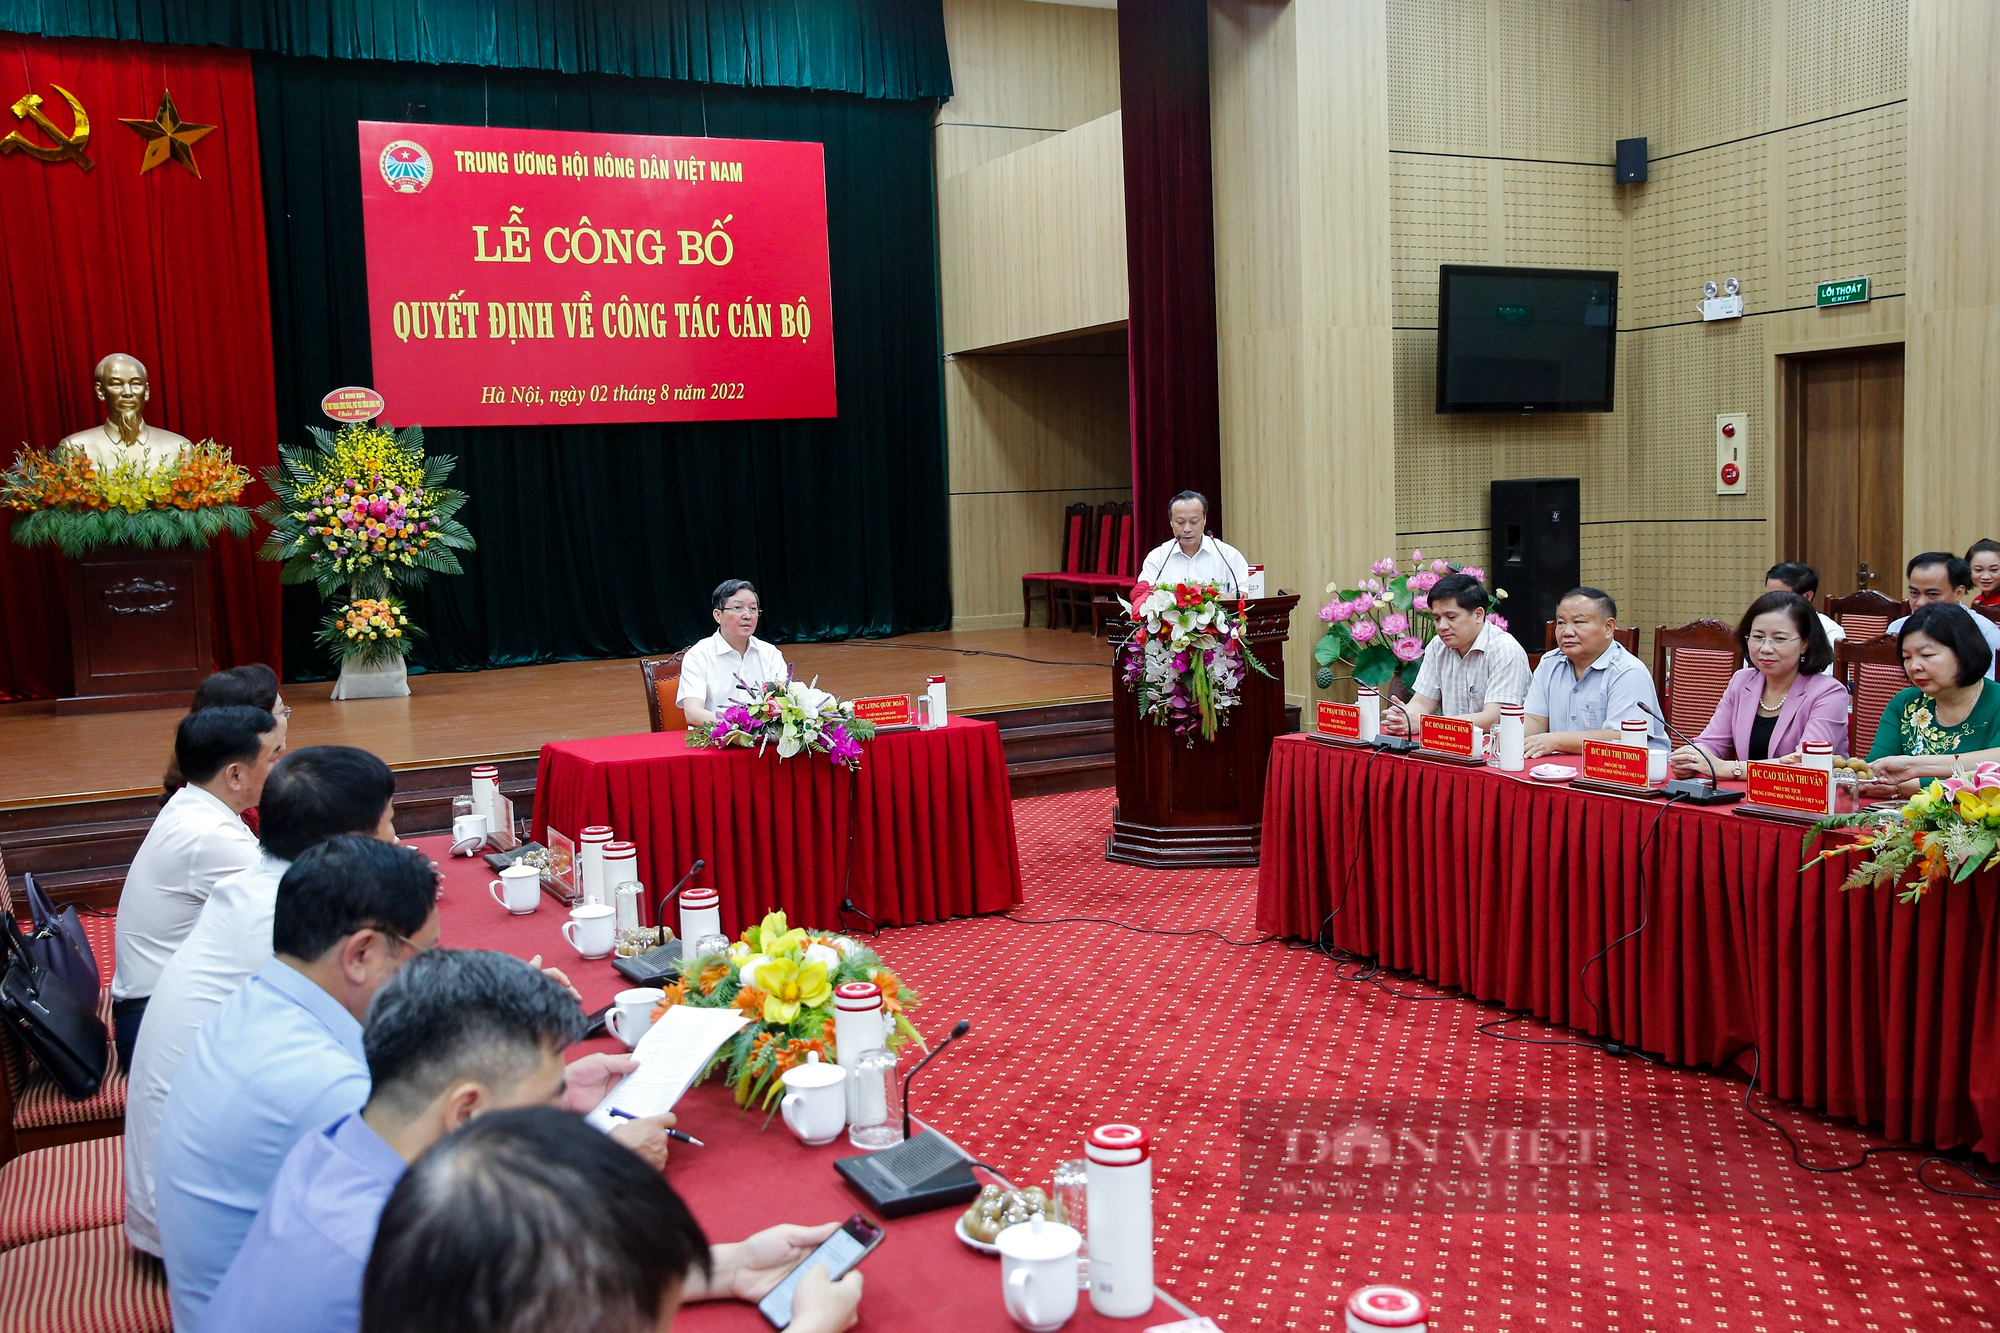 Hình ảnh Lễ công bố Quyết định về công tác cán bộ tại Trung ương Hội Nông dân Việt Nam - Ảnh 2.